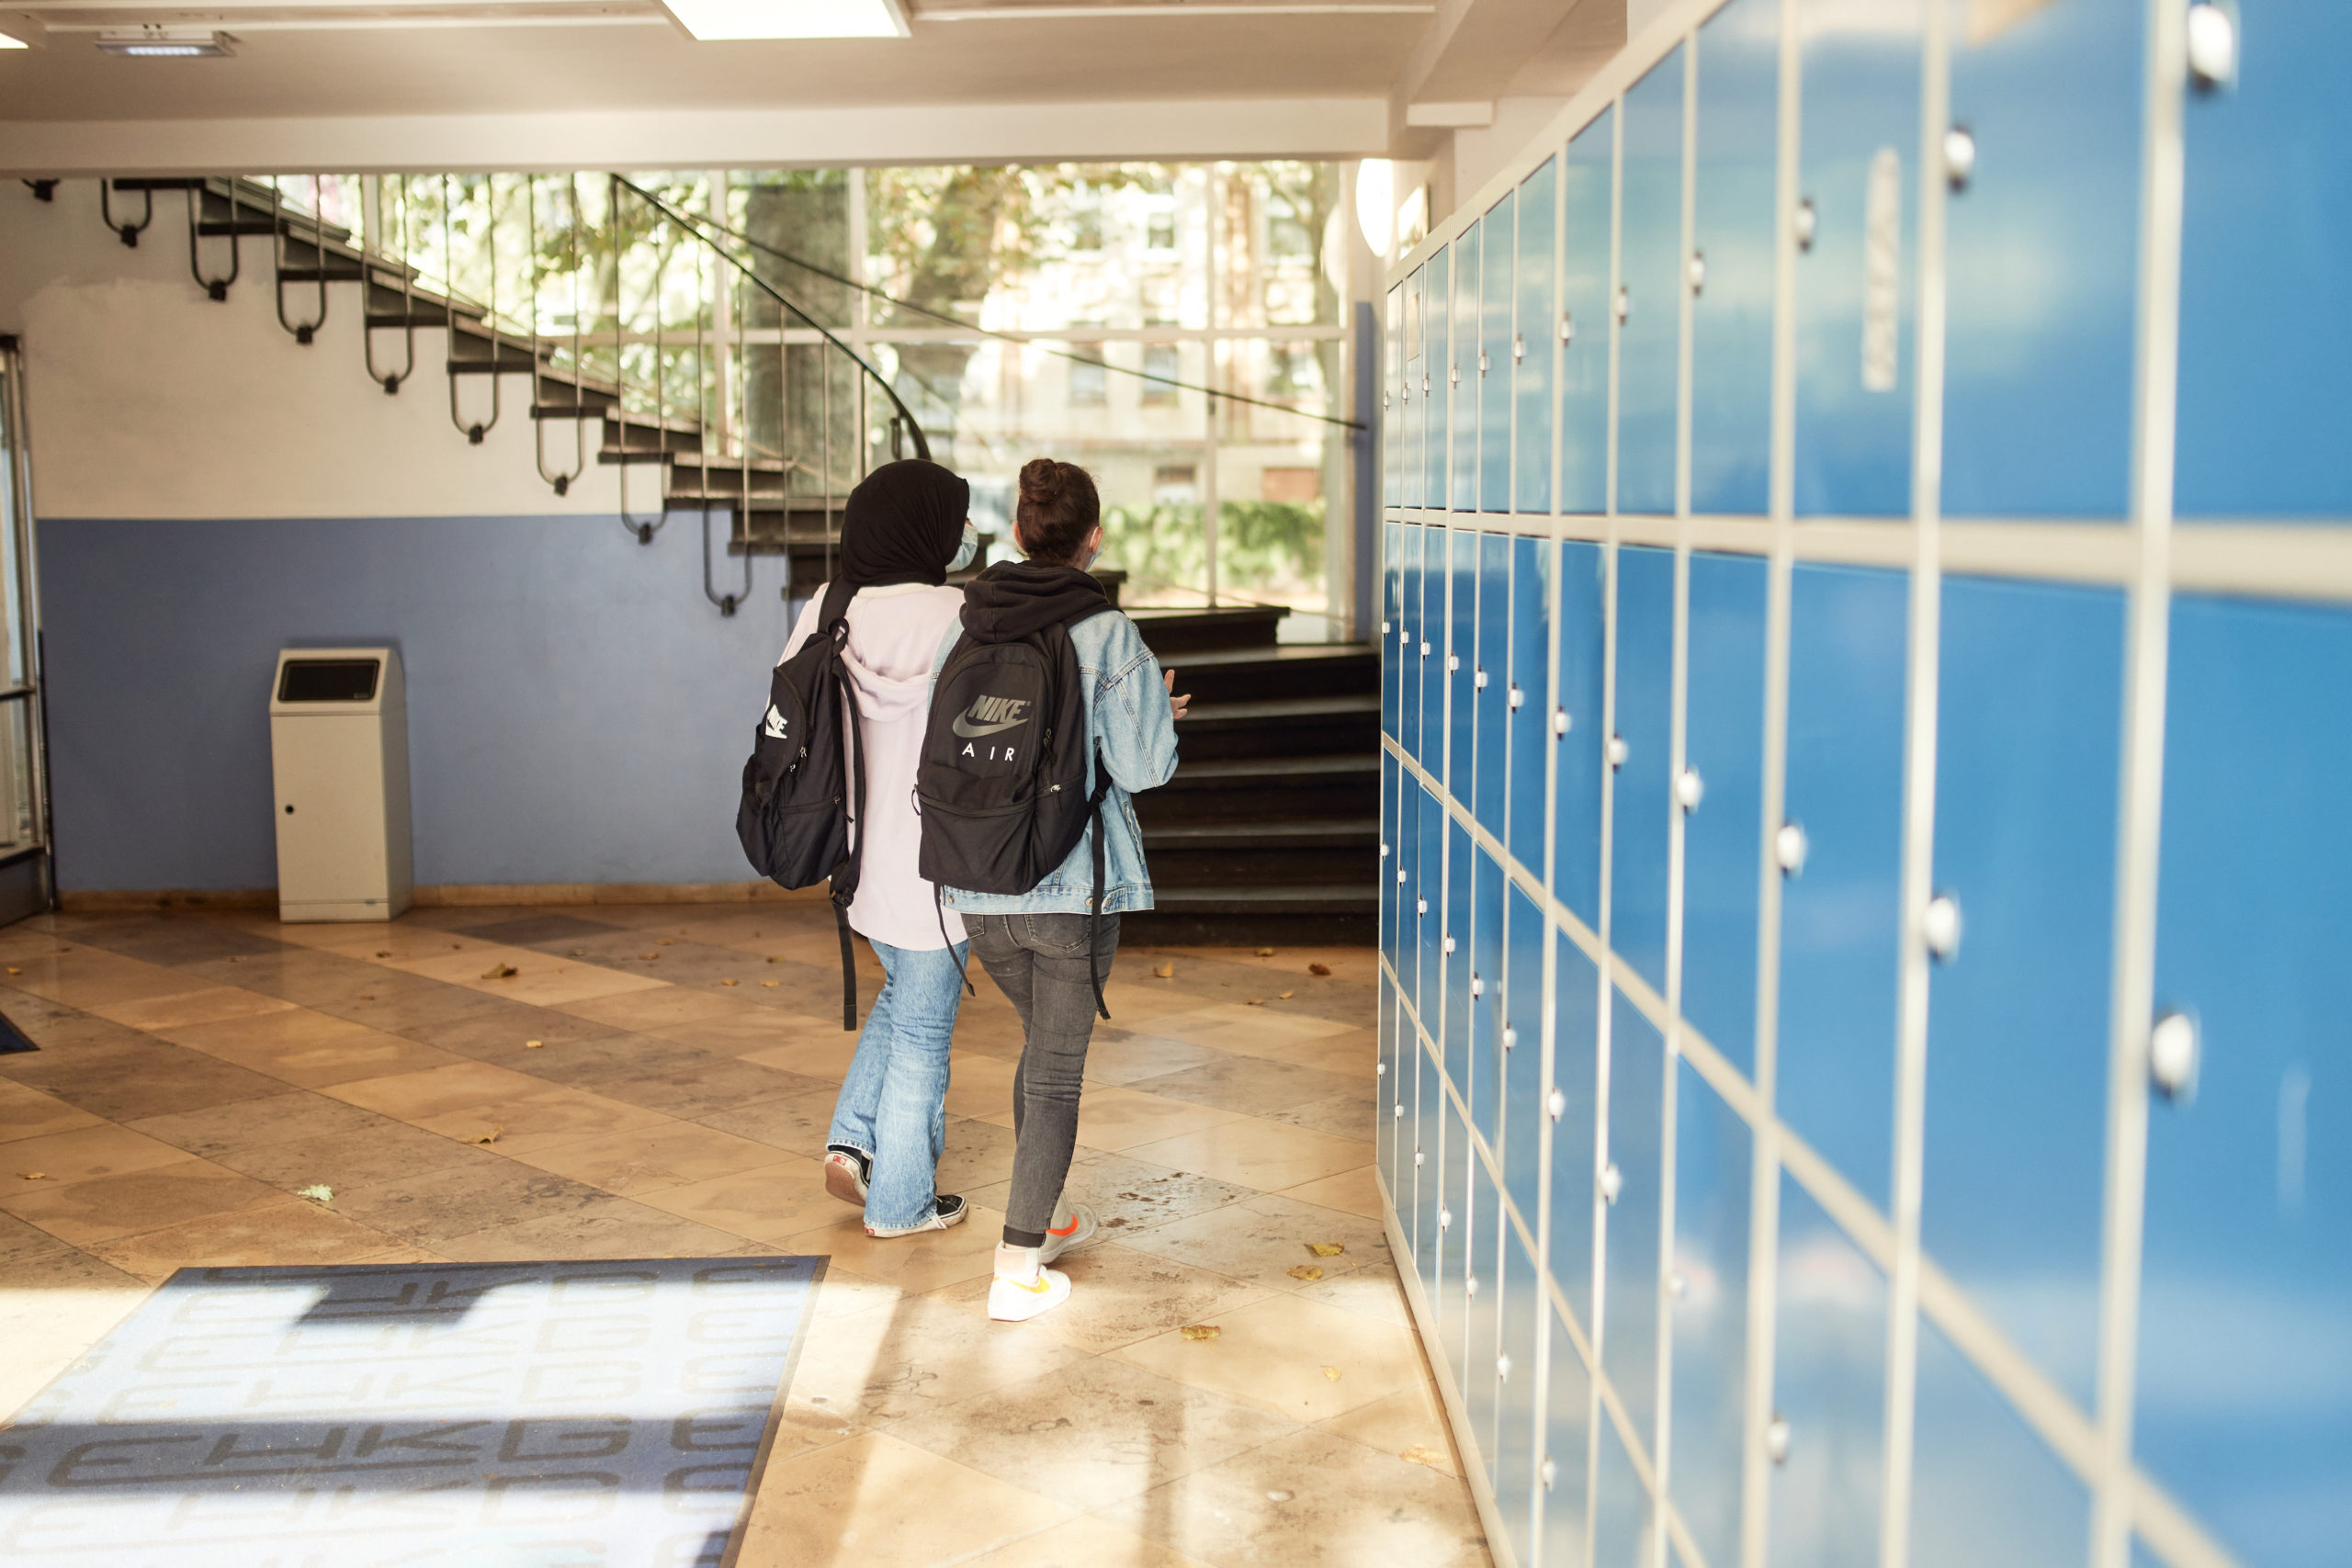 Schulflur, zwei Schulkinder laufen auf eine Treppe zu. Rechts sind blaue Schließfächer zu sehen.